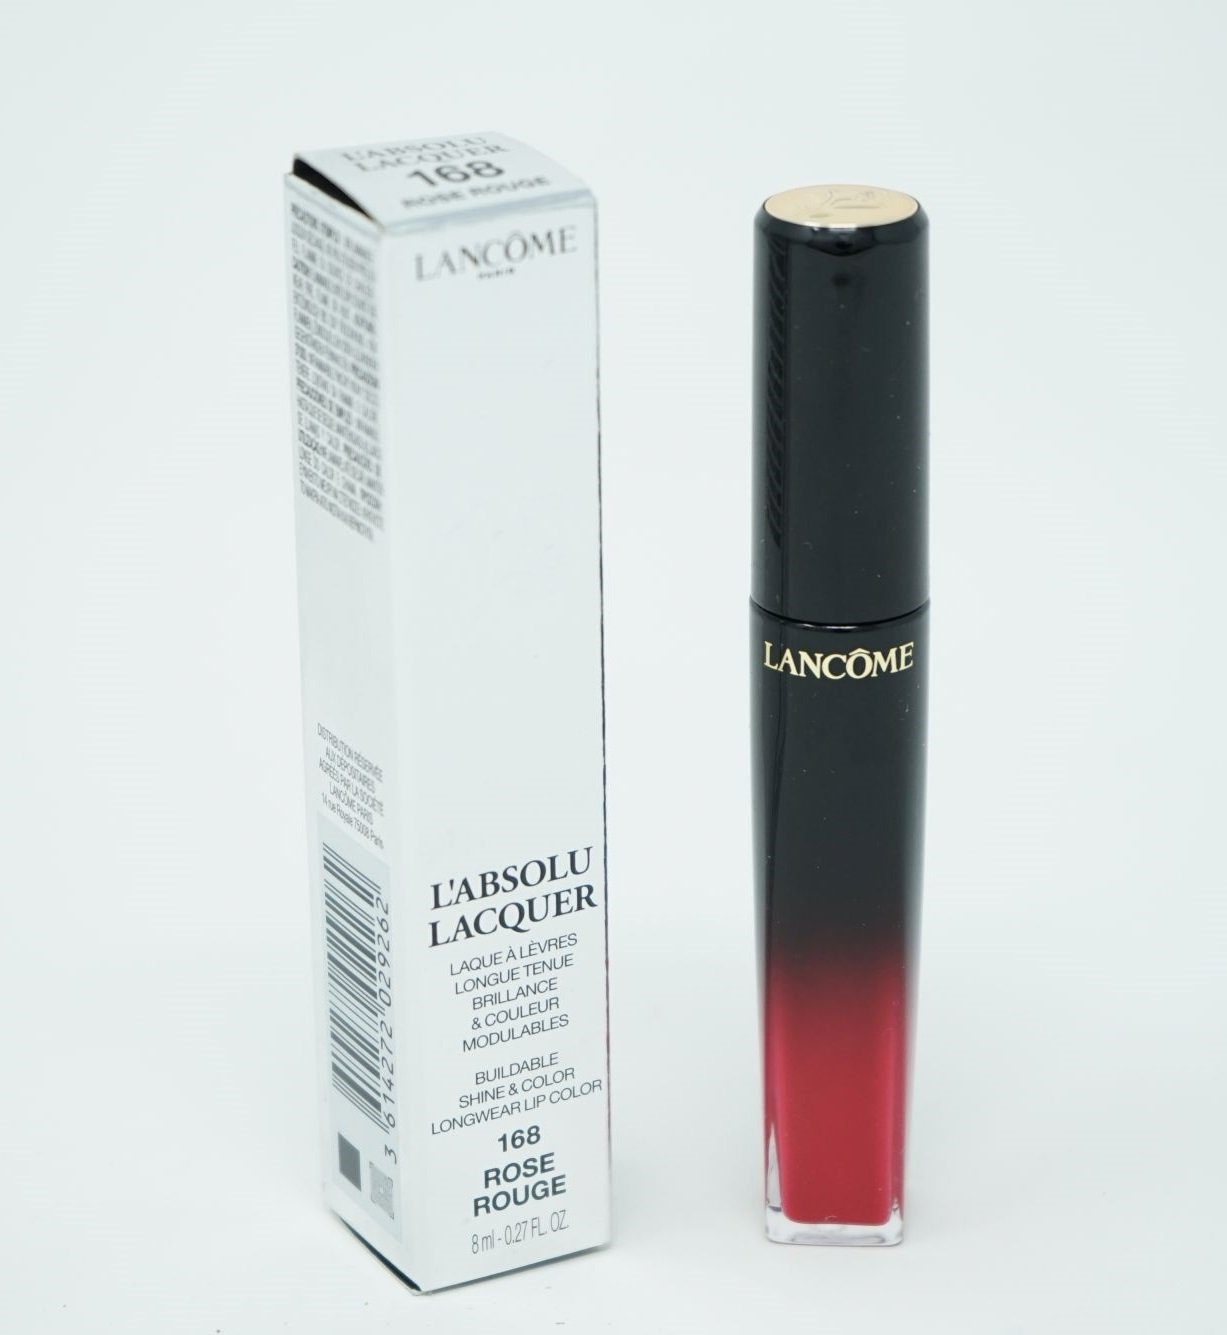 LANCOME Eau de Toilette LANCOME L'Absolu Lacquer Lipgloss Liquid Lipstick 168 Rose Rouge